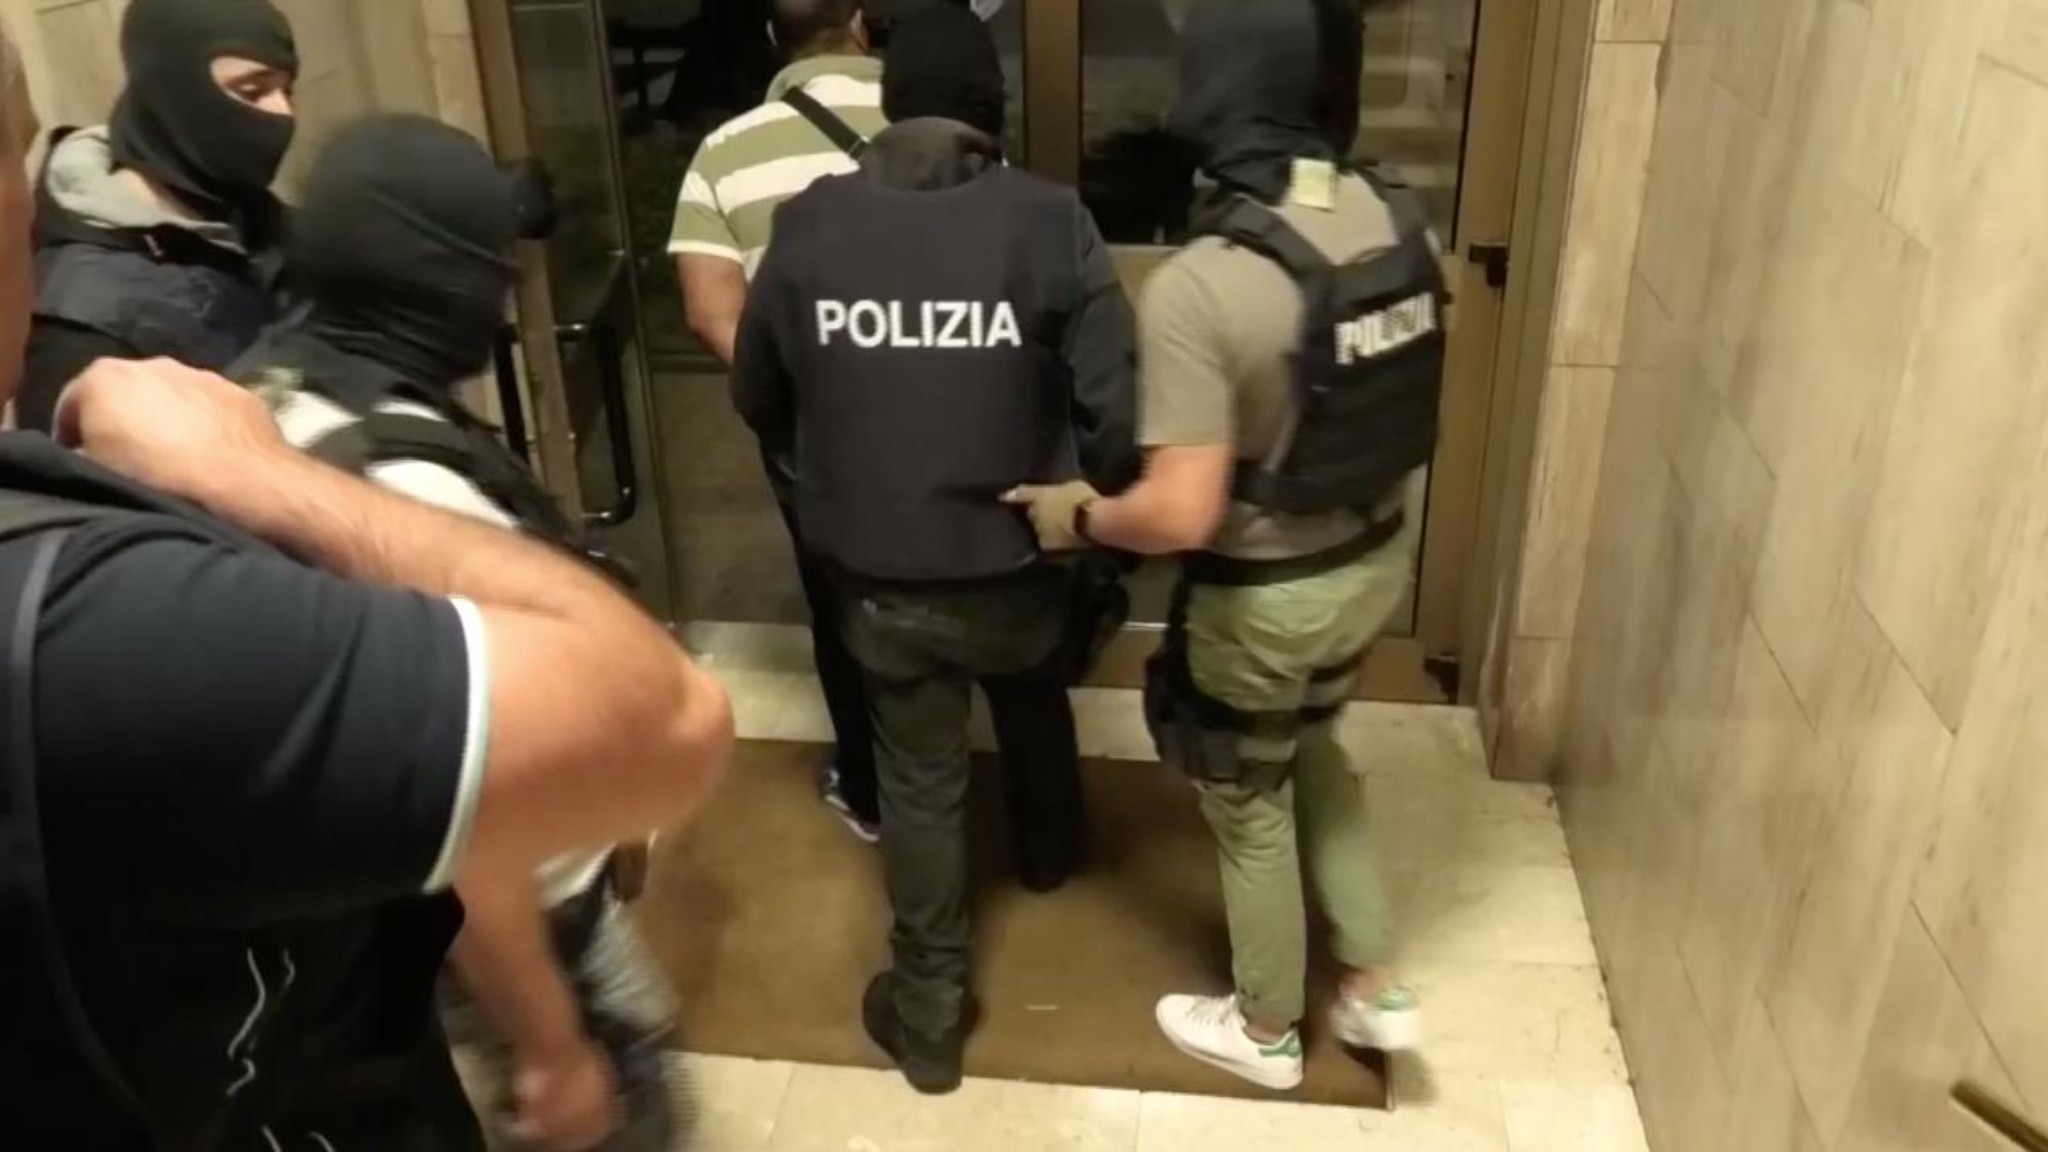 Ricercato per terrorismo in Algeria, preso in metro a Milano. Ai poliziotti ha gridato “Allah Akbar”